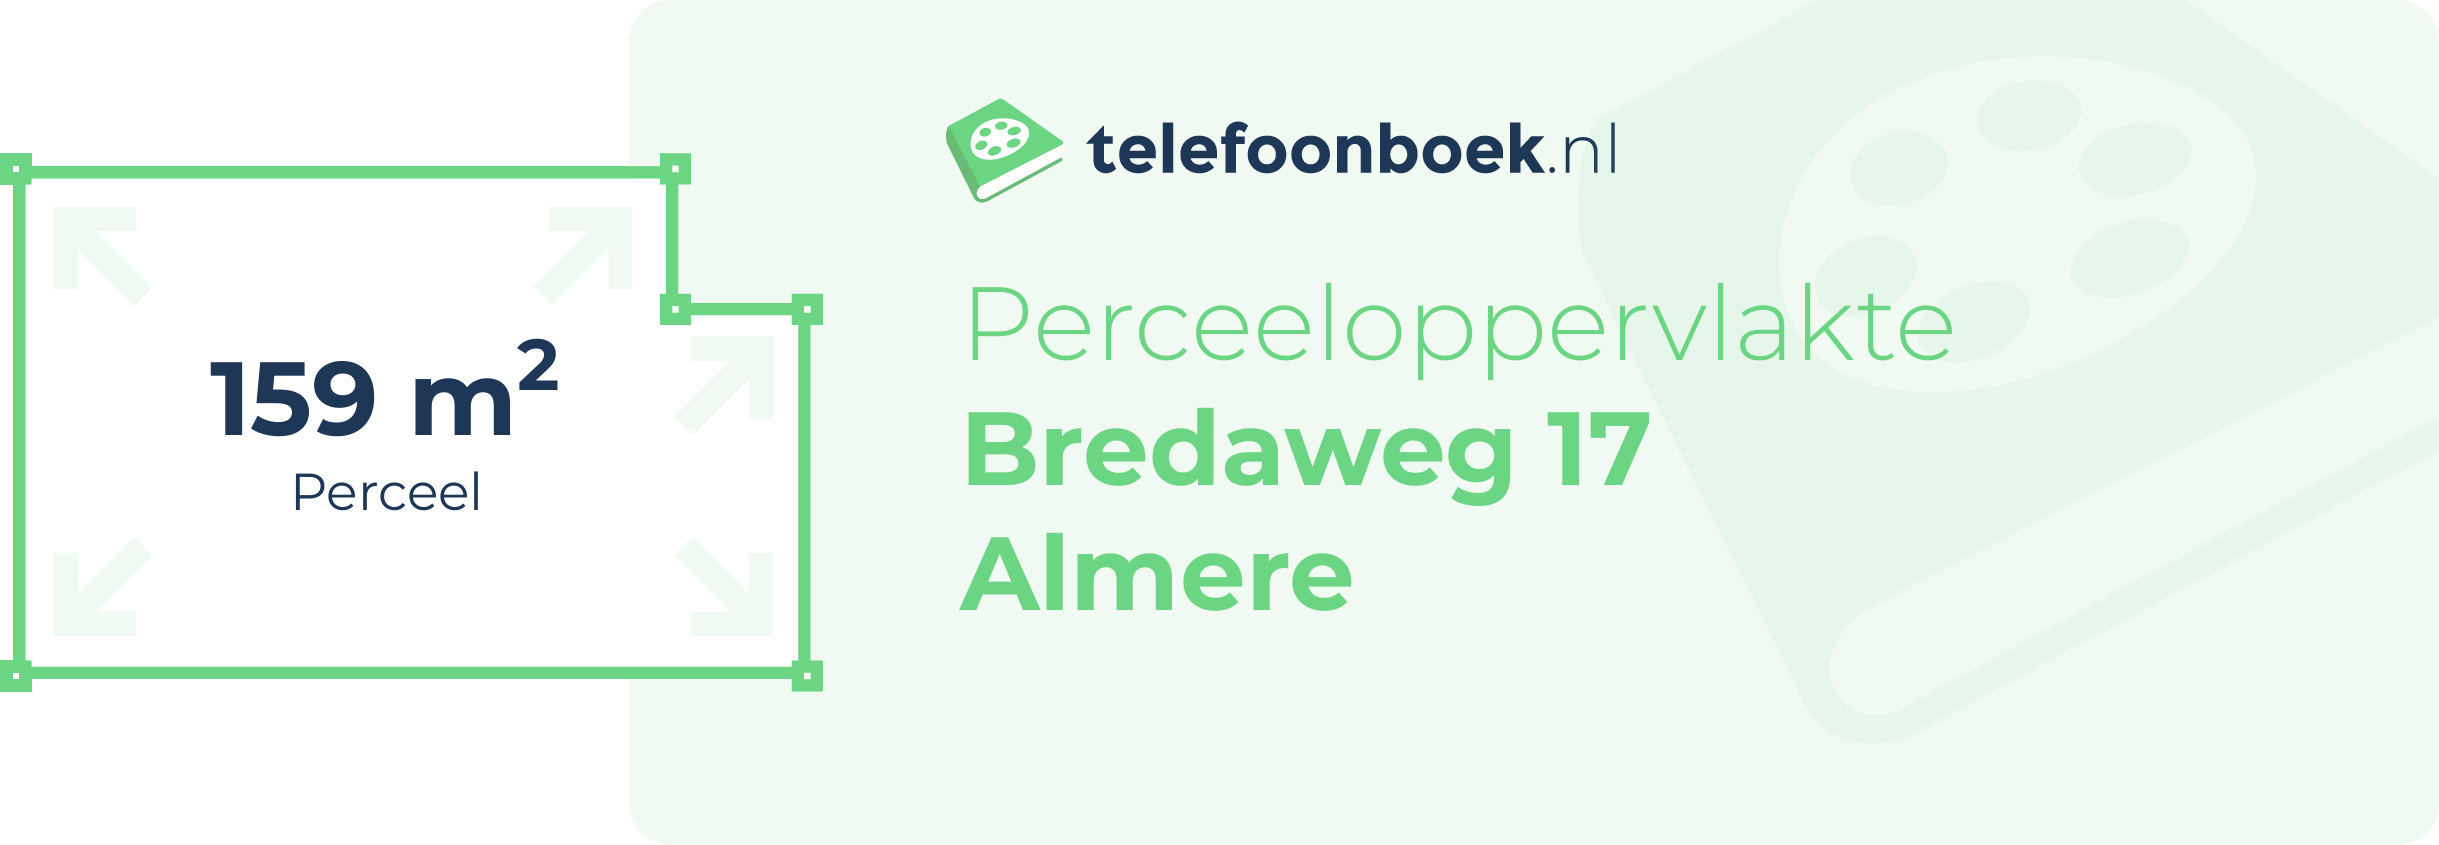 Perceeloppervlakte Bredaweg 17 Almere